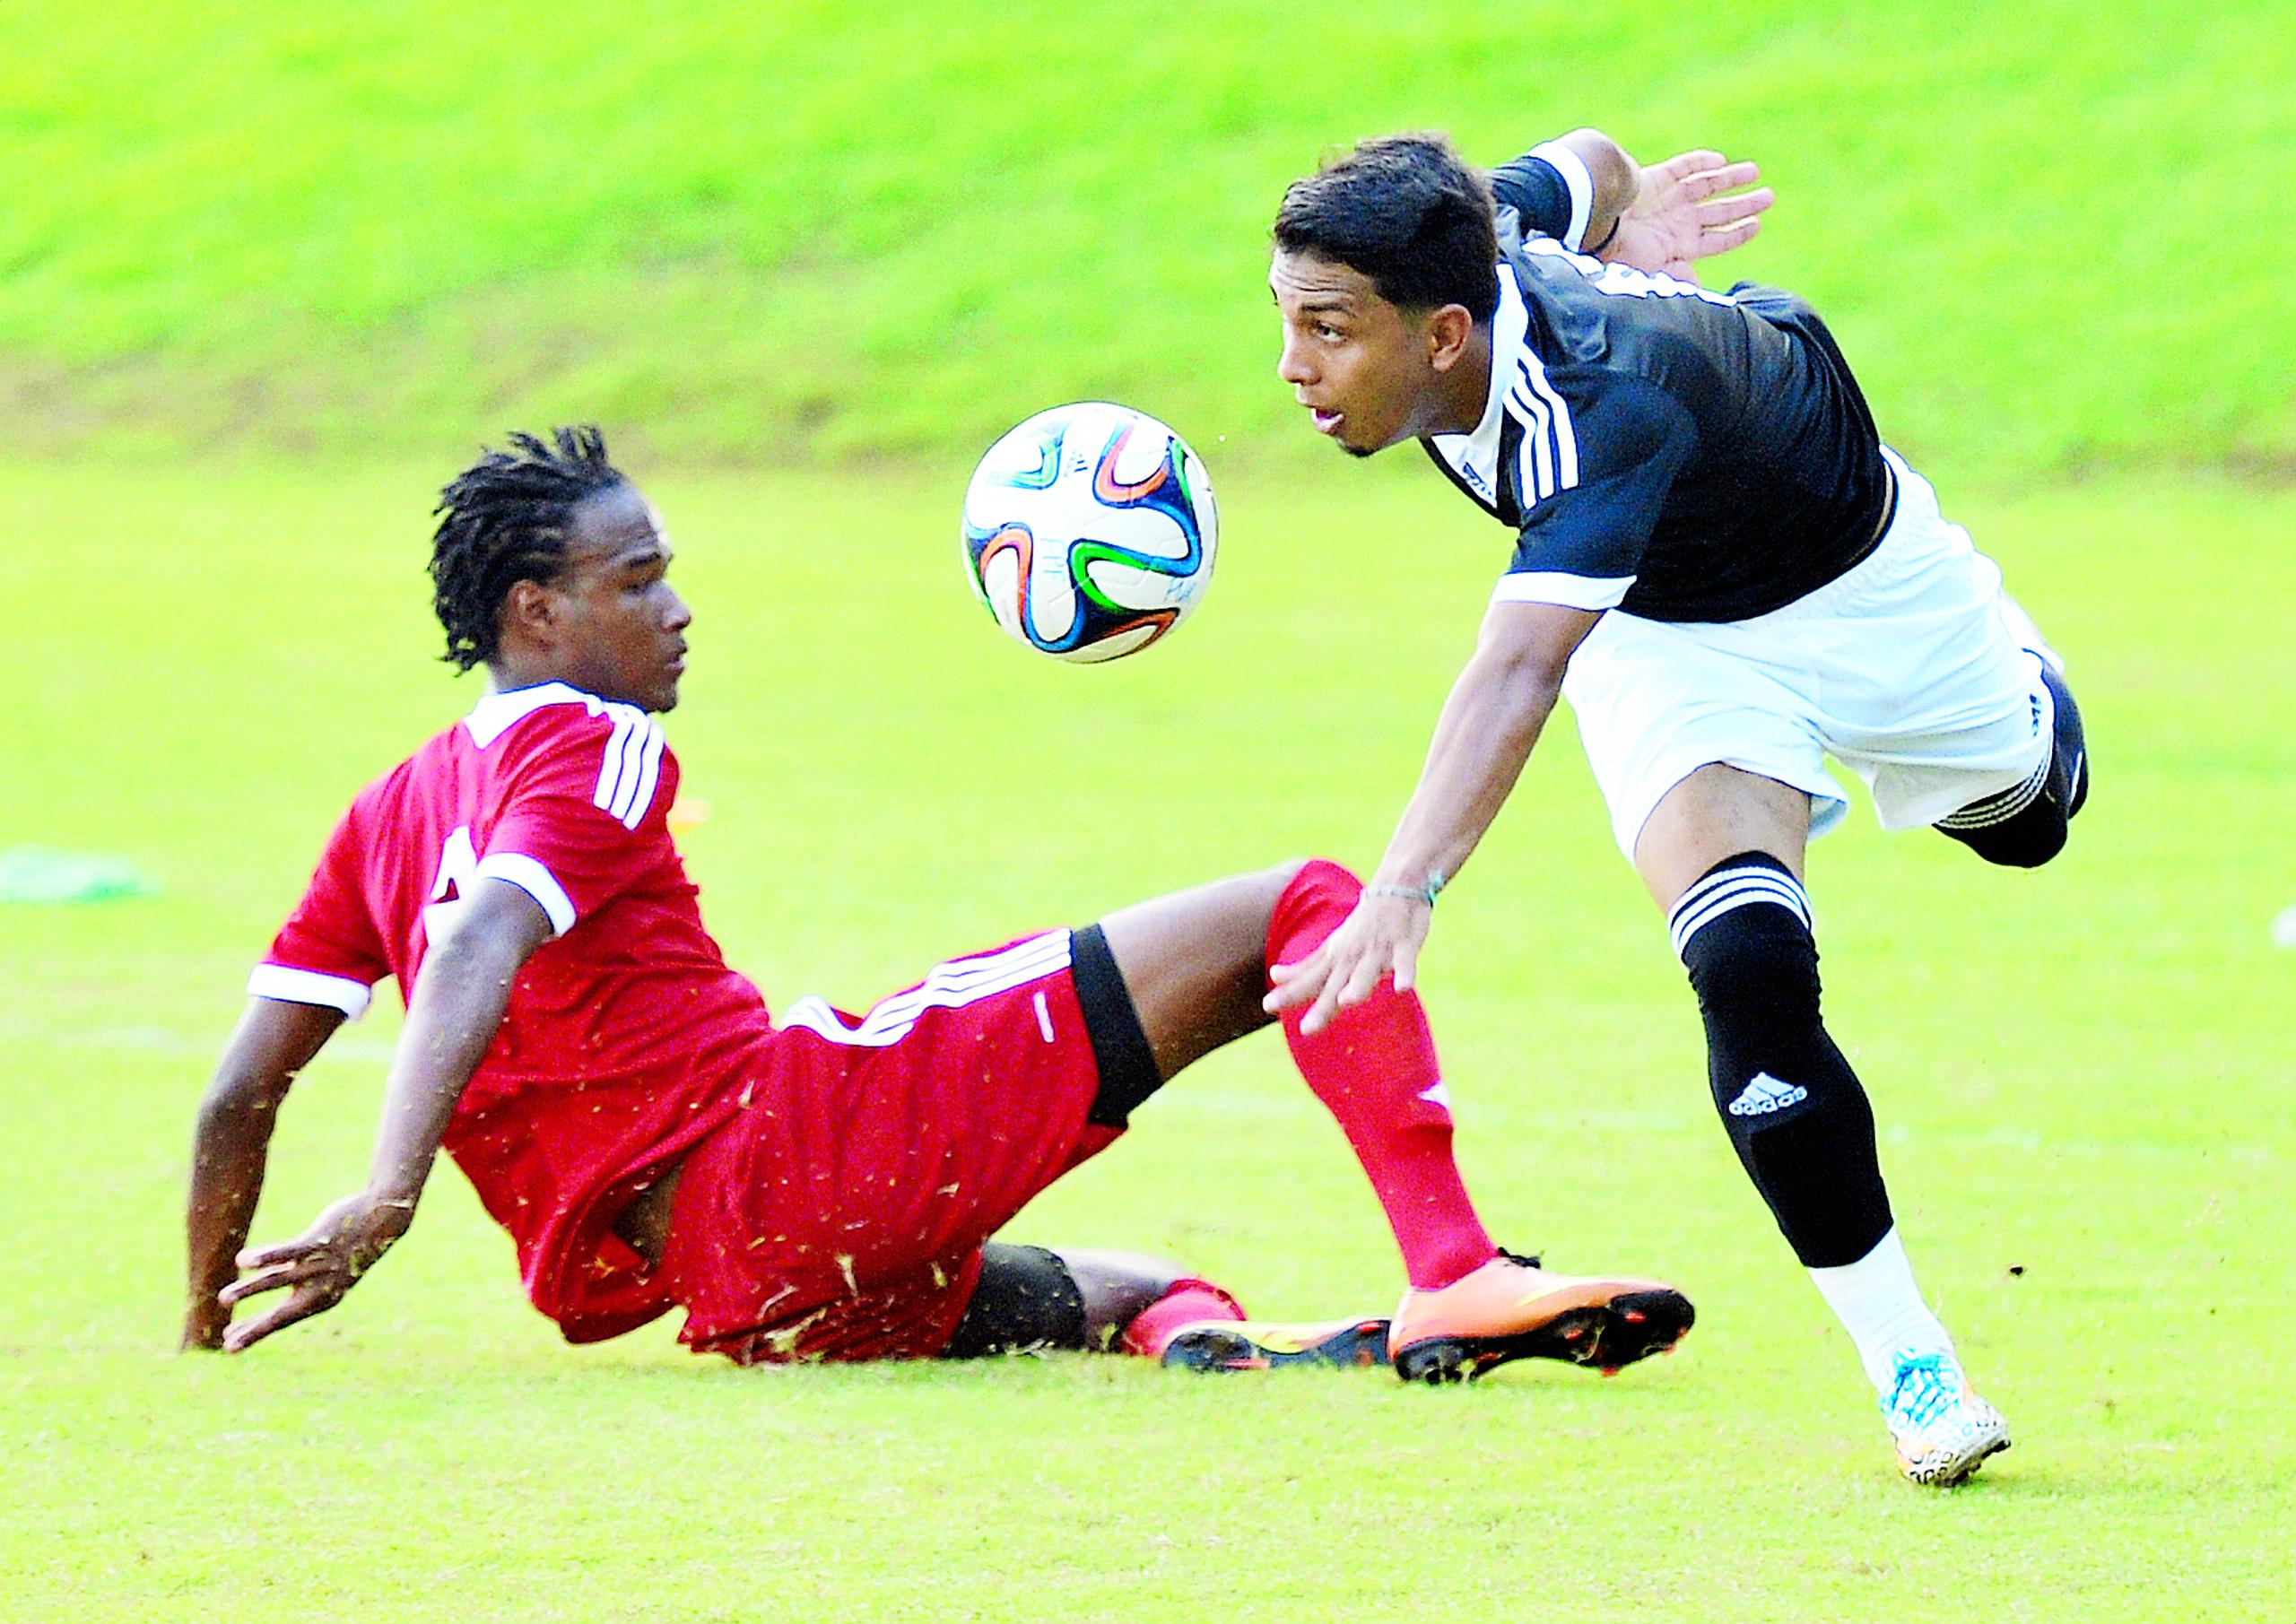 La Puerto Rico Soccer League, según sus directivos, ha servido para fomentar el desarrollo de talento nativo.